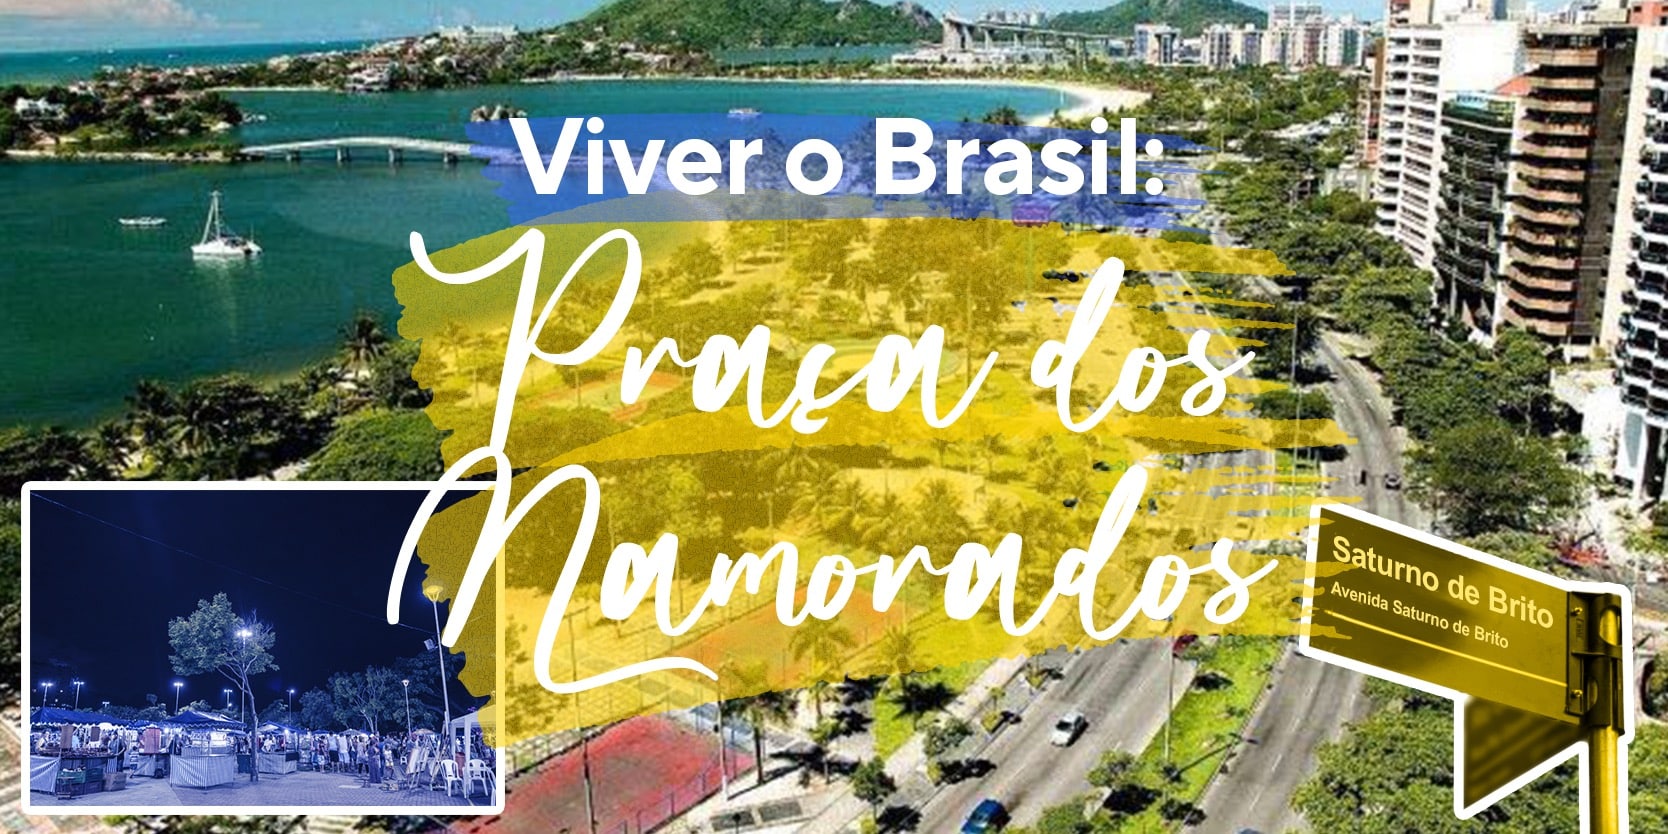 Viver o Brasil: conheça a Praça dos Namorados, em Vitória